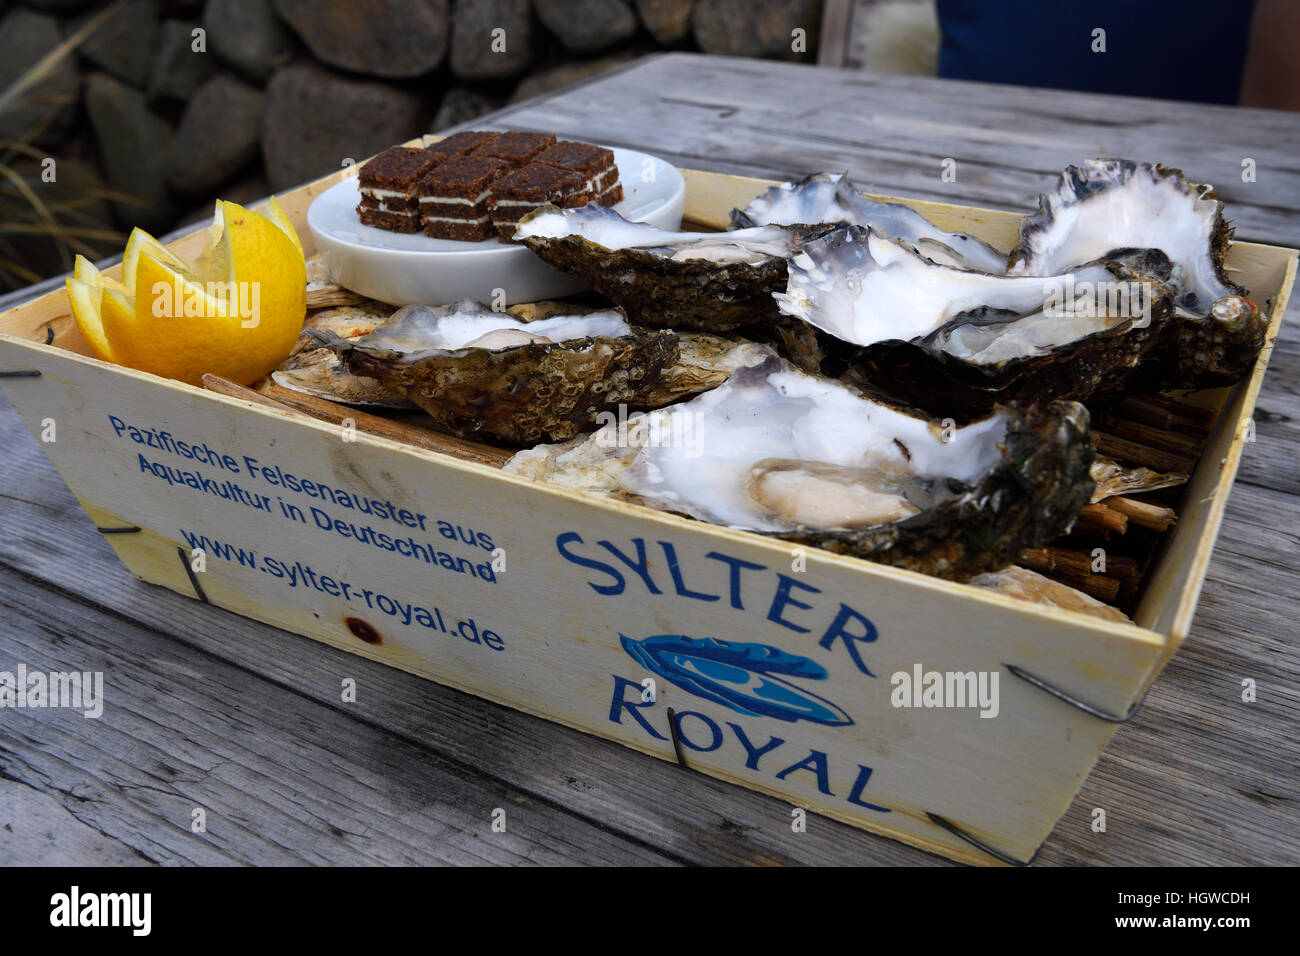 6 frische Austern, Sylter Royal, serviert im traditionellen Spankorb, Sylt, nordfriesische Inseln, Nordfriesland, Schleswig-Holstein, Deutschland Stock Photo